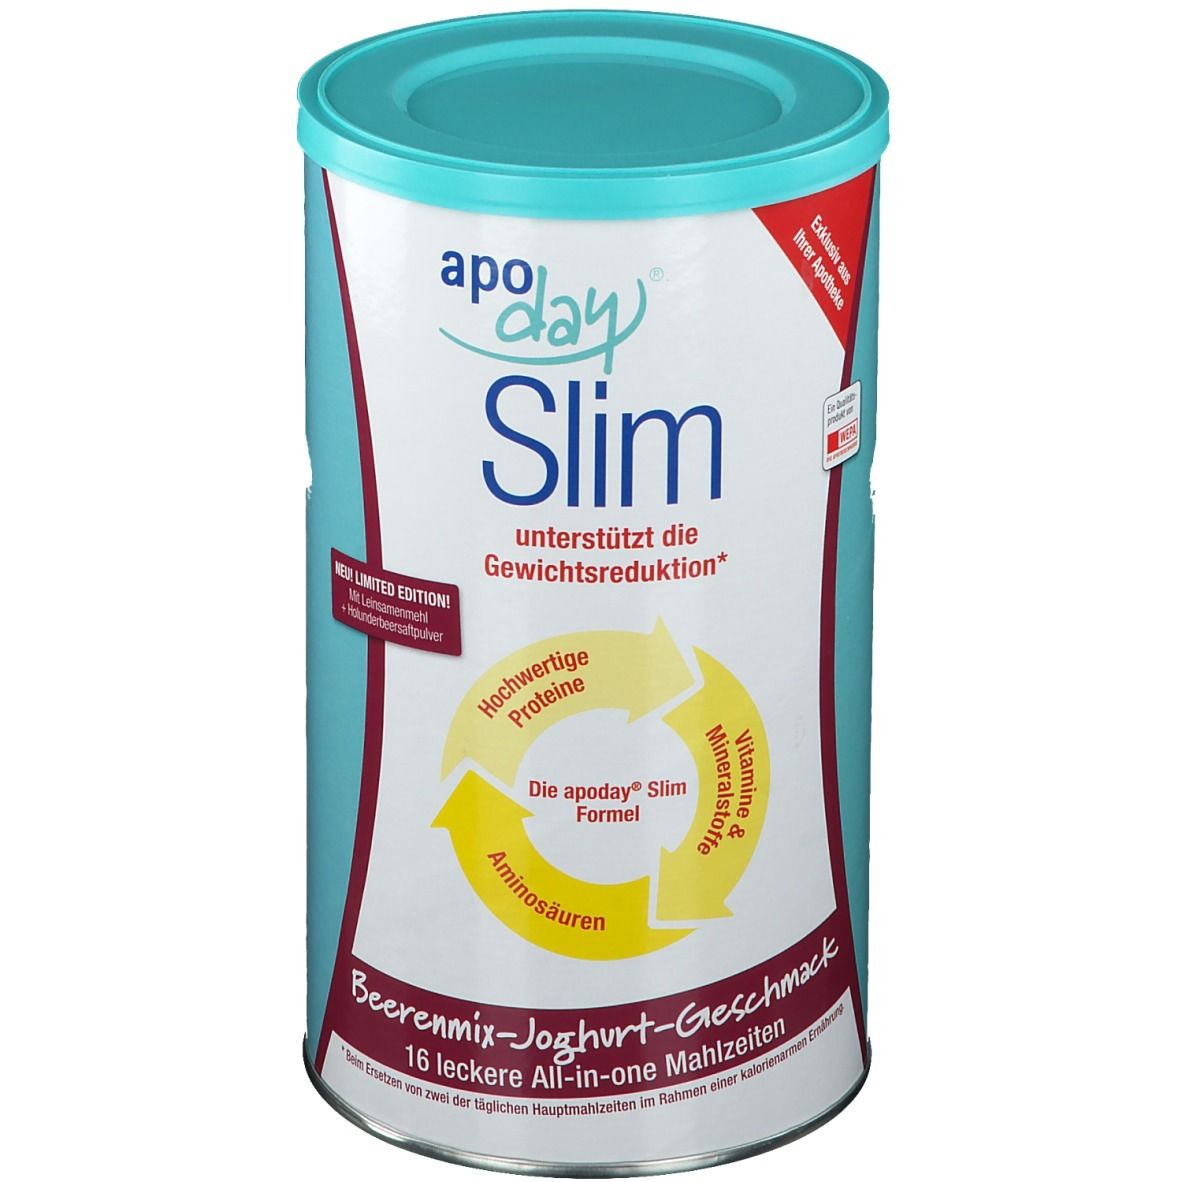 apoday® Slim Beerenmix- Joghurt